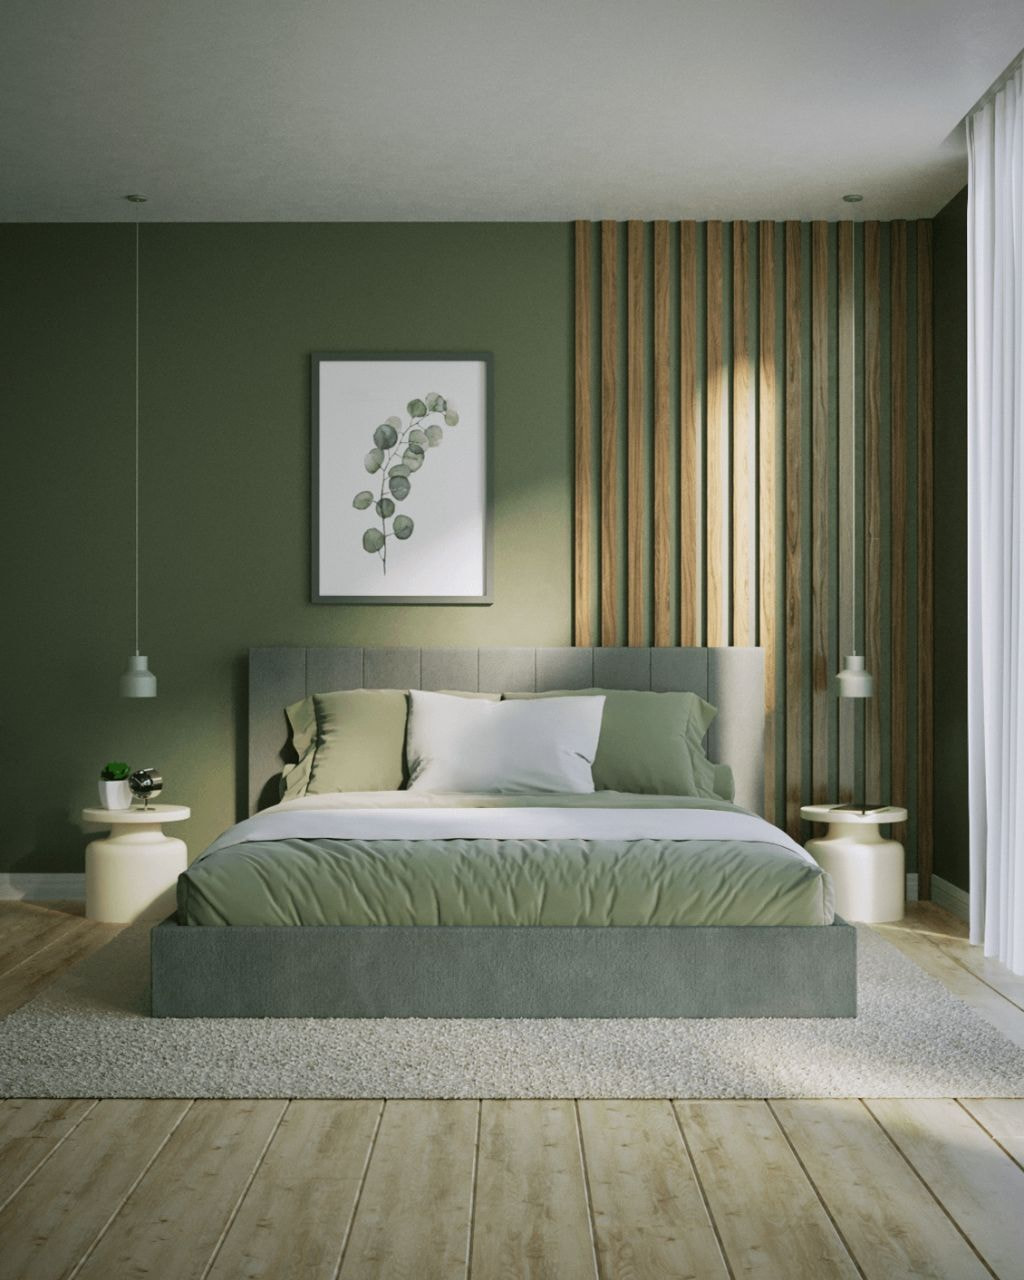 Ý nghĩa màu xanh lá cây trong thiết kế nội thất